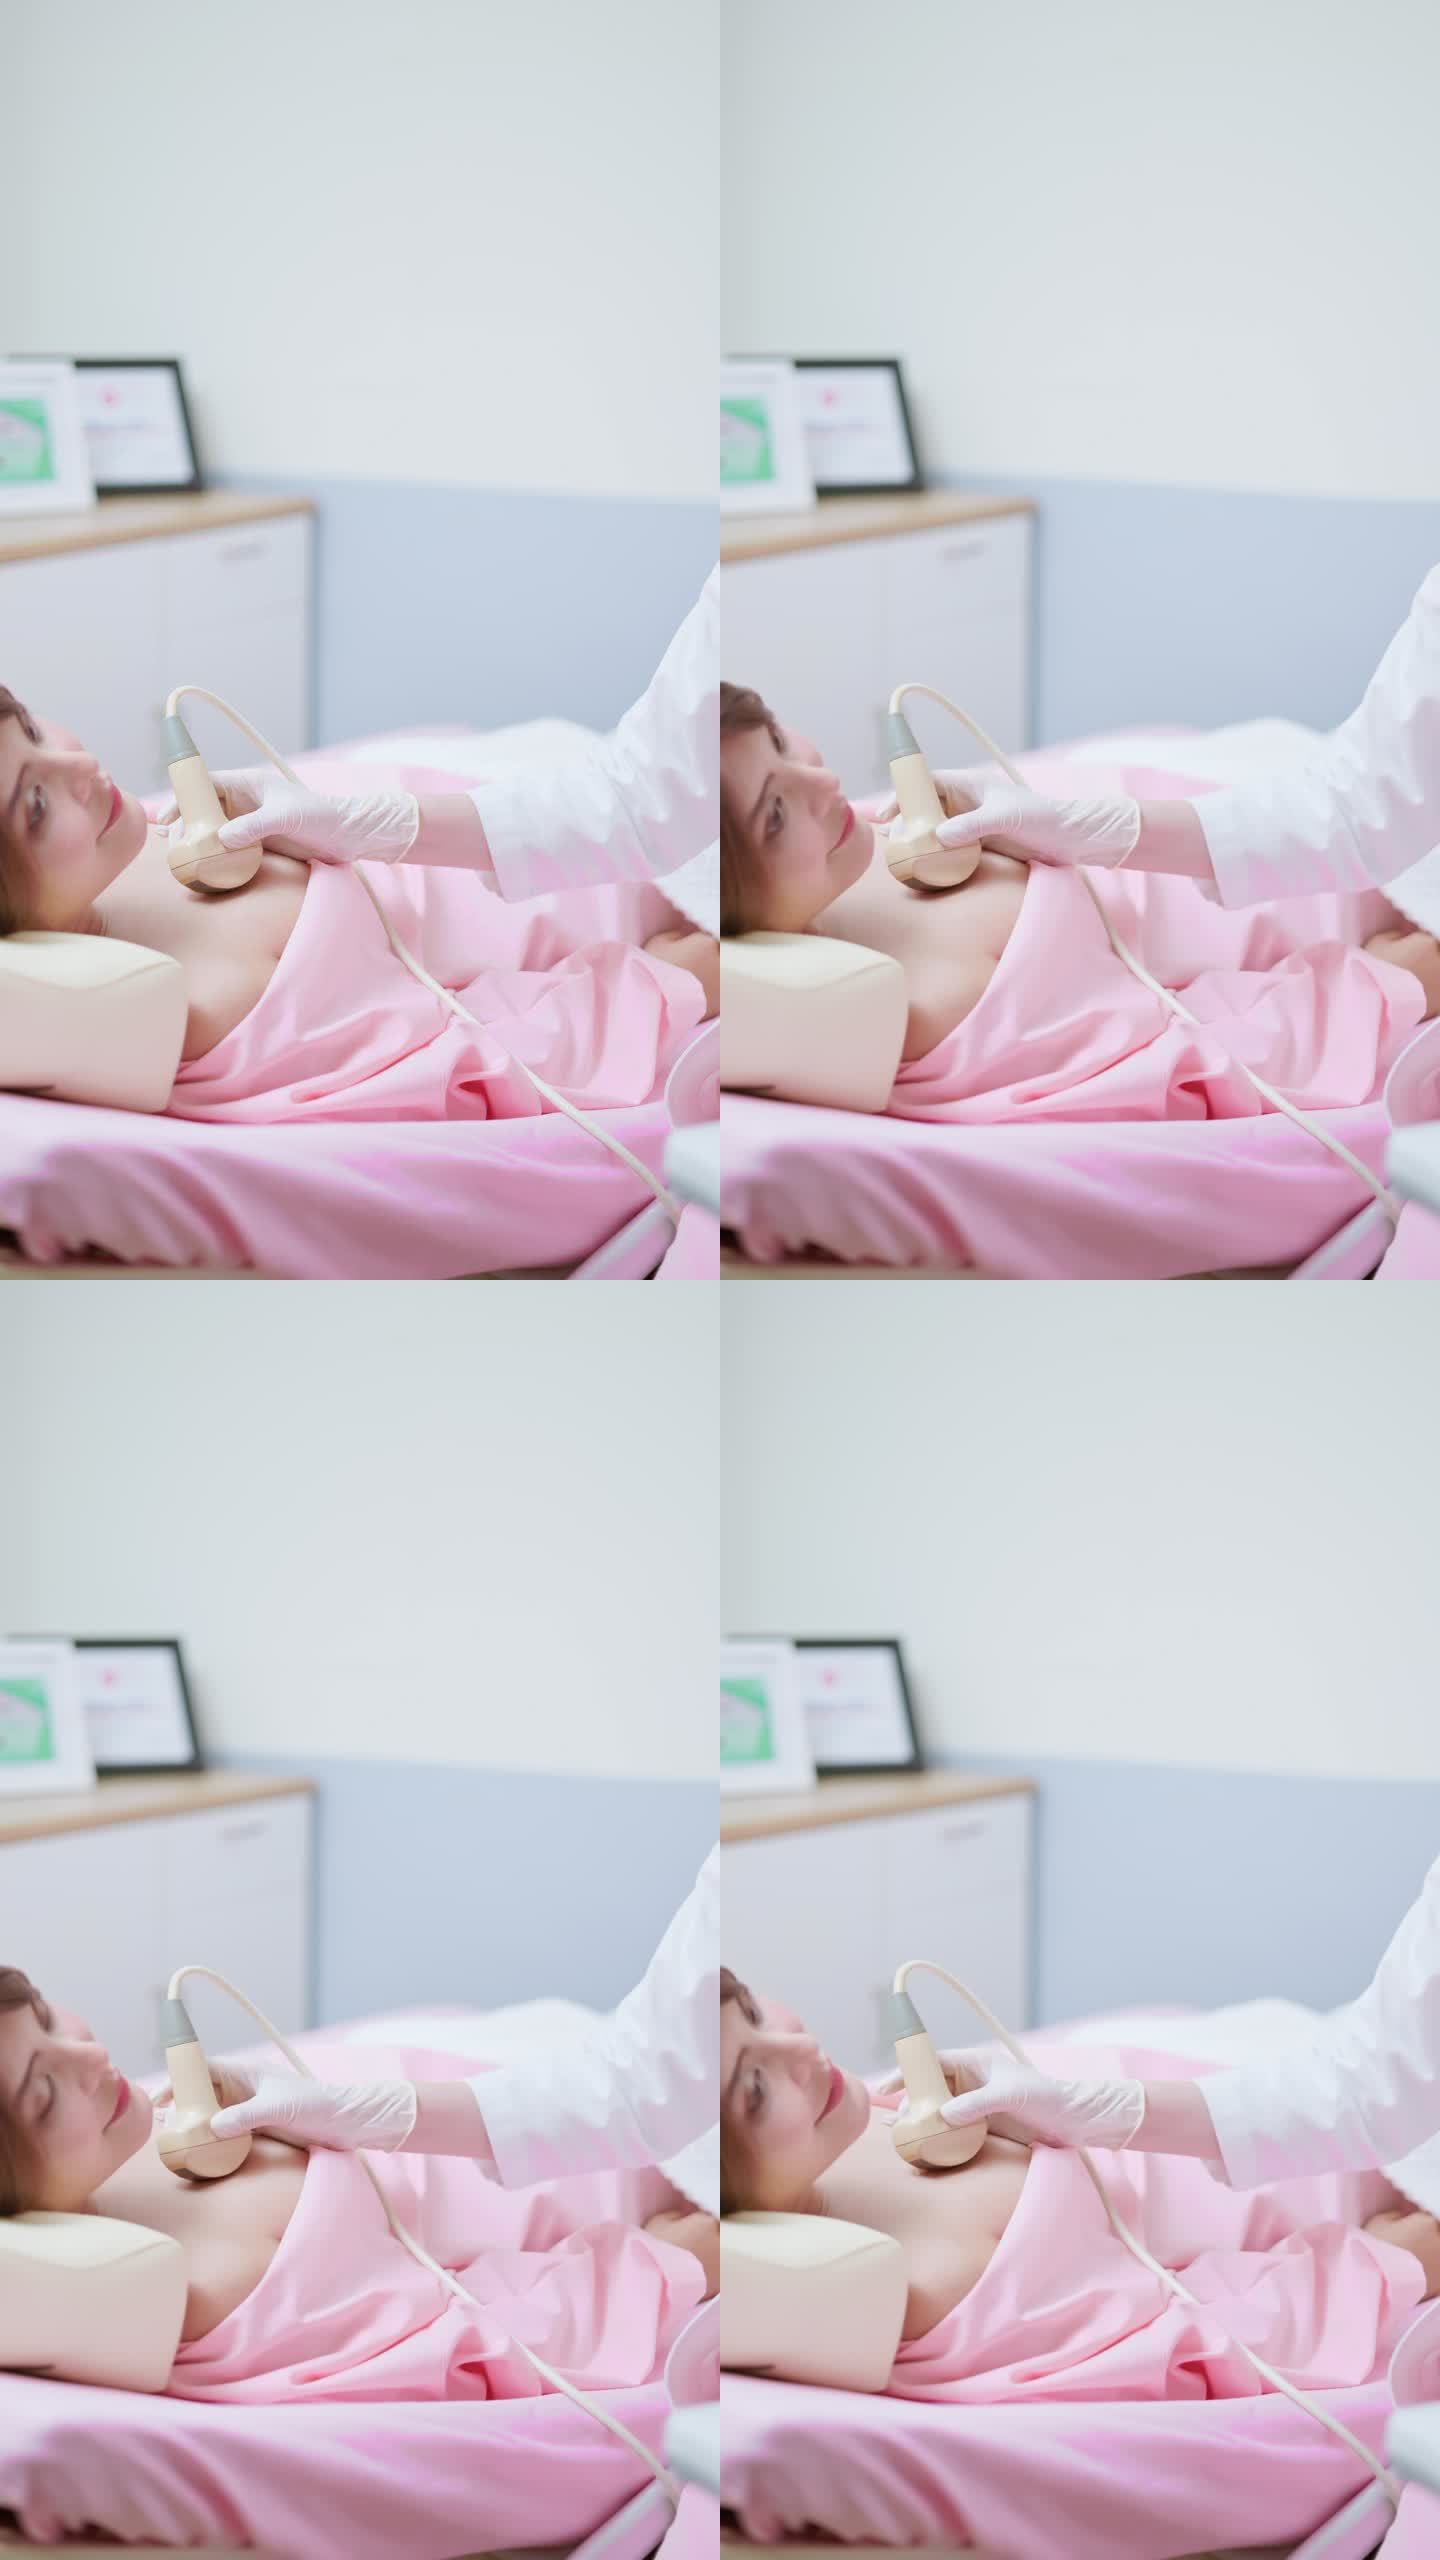 女性乳房超声检查竖版竖屏孕检